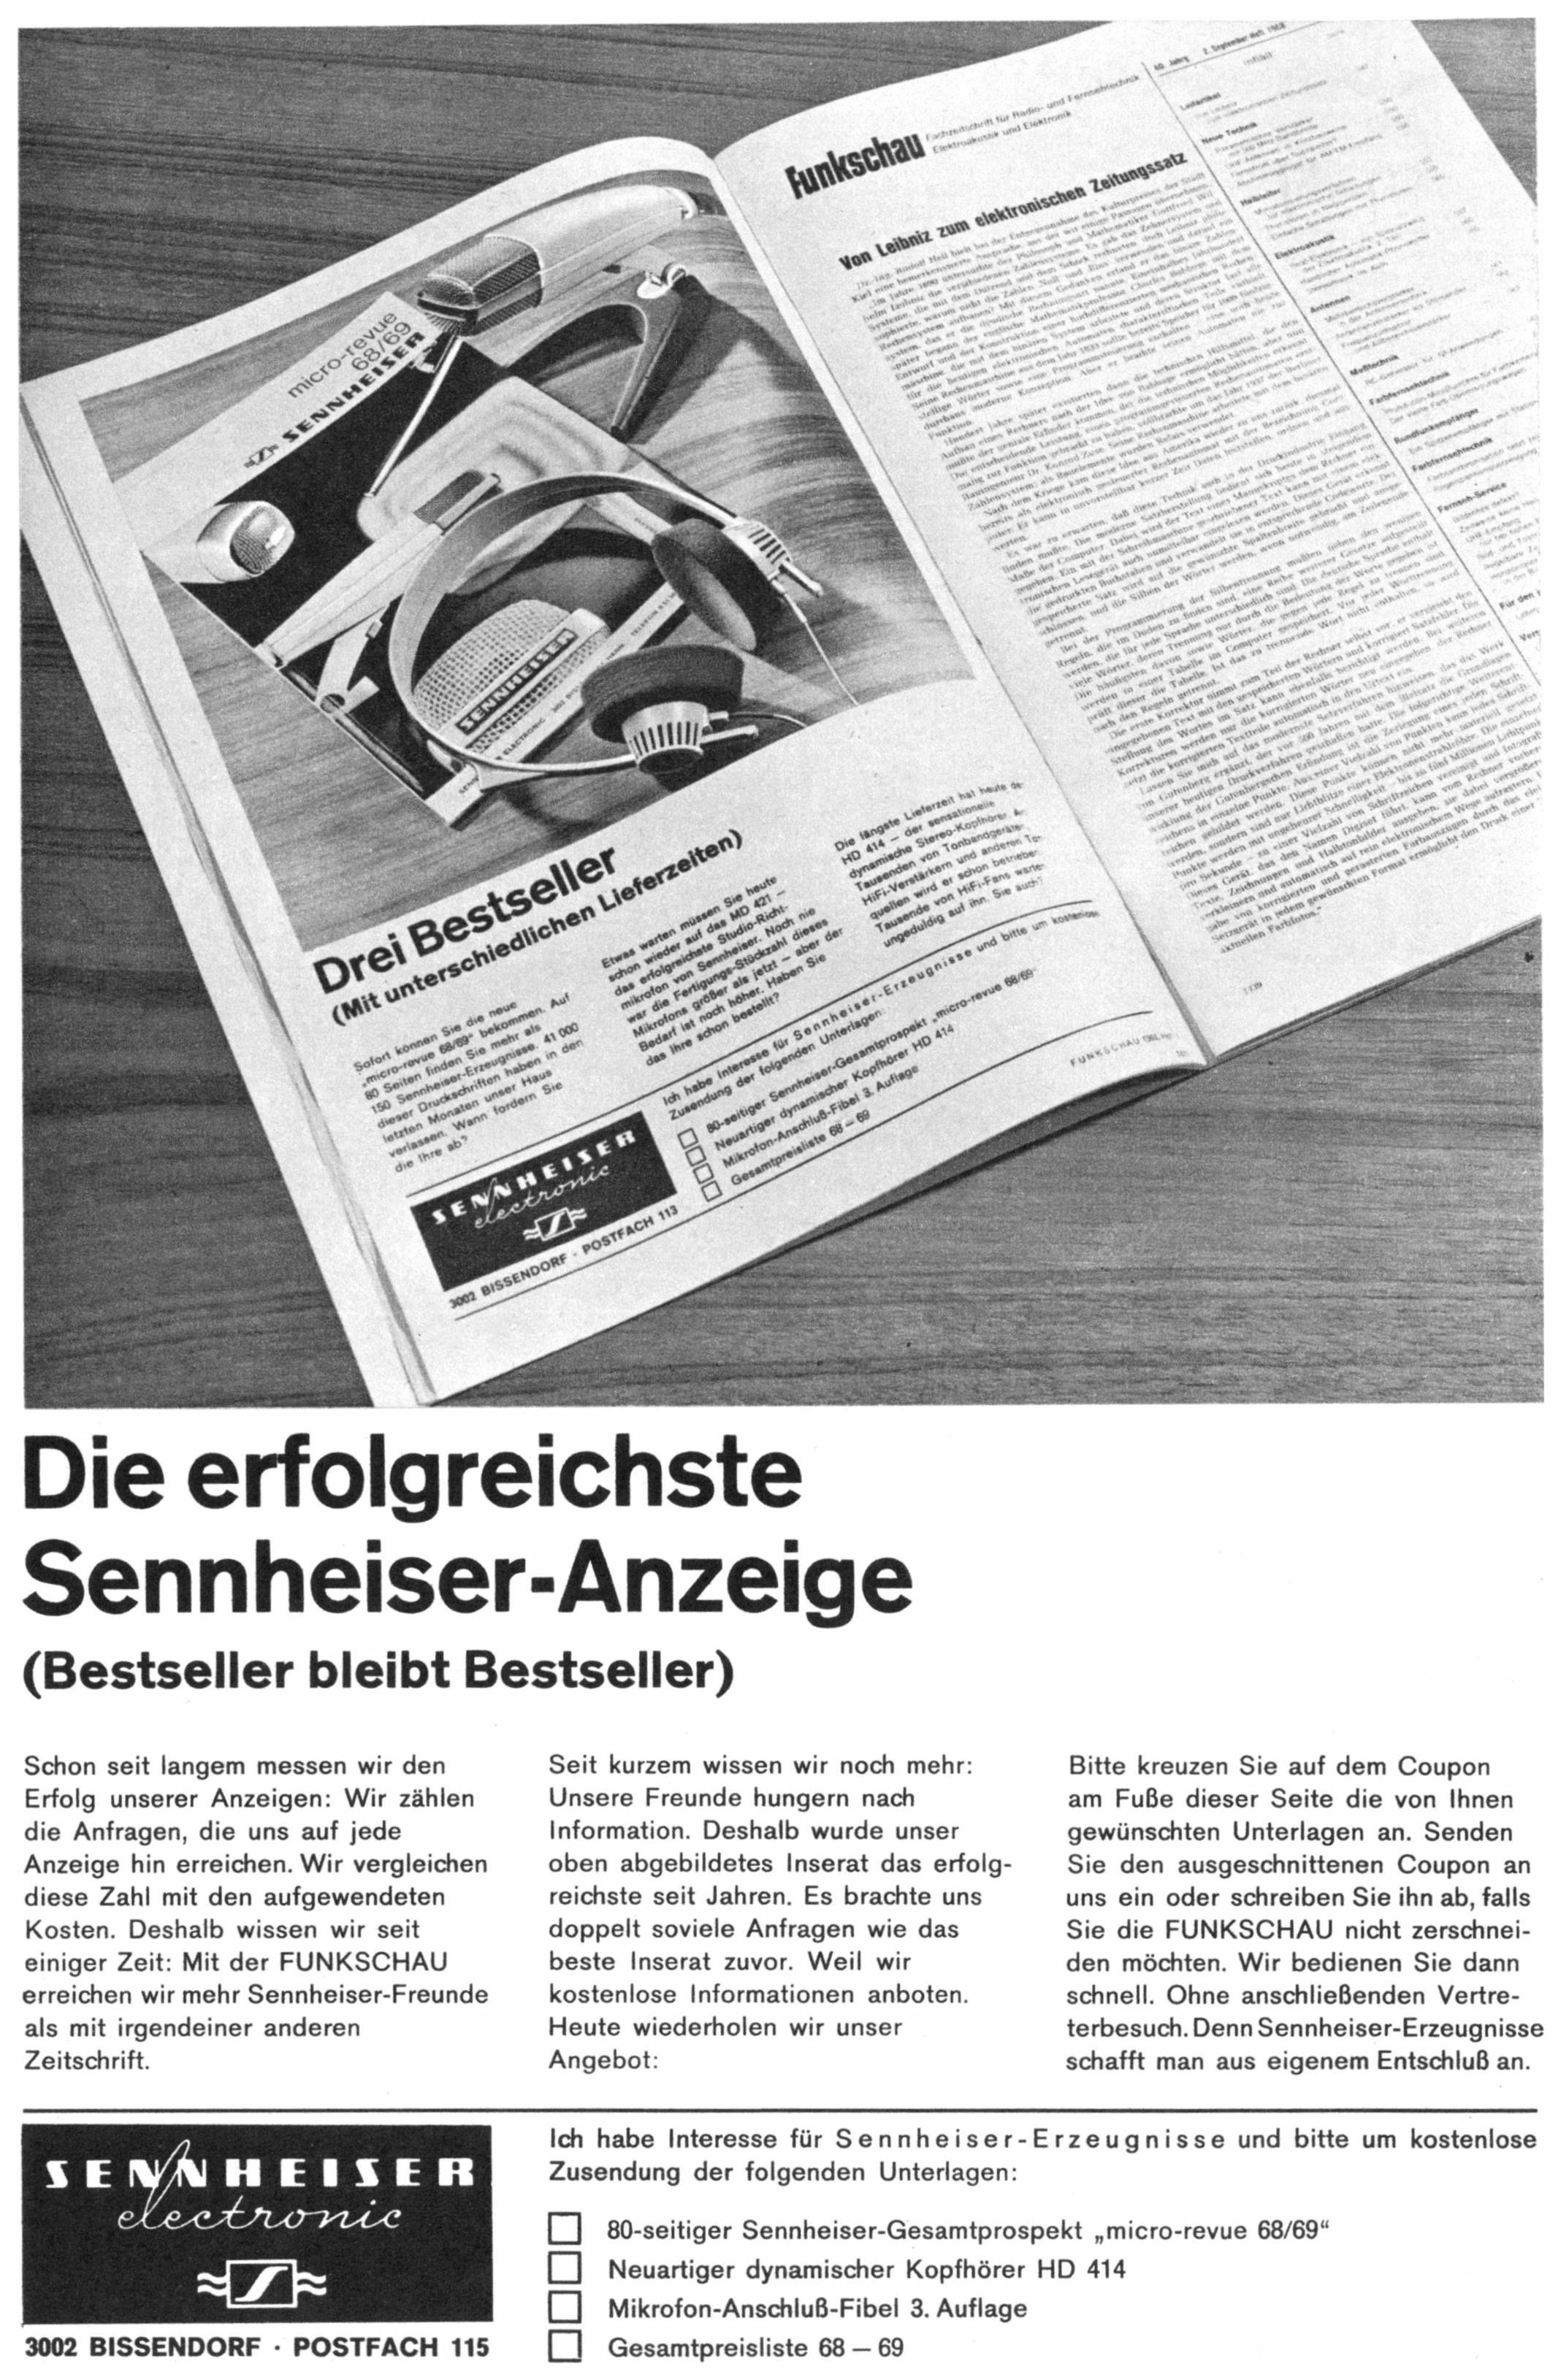 Sennheiser 1968 0.jpg